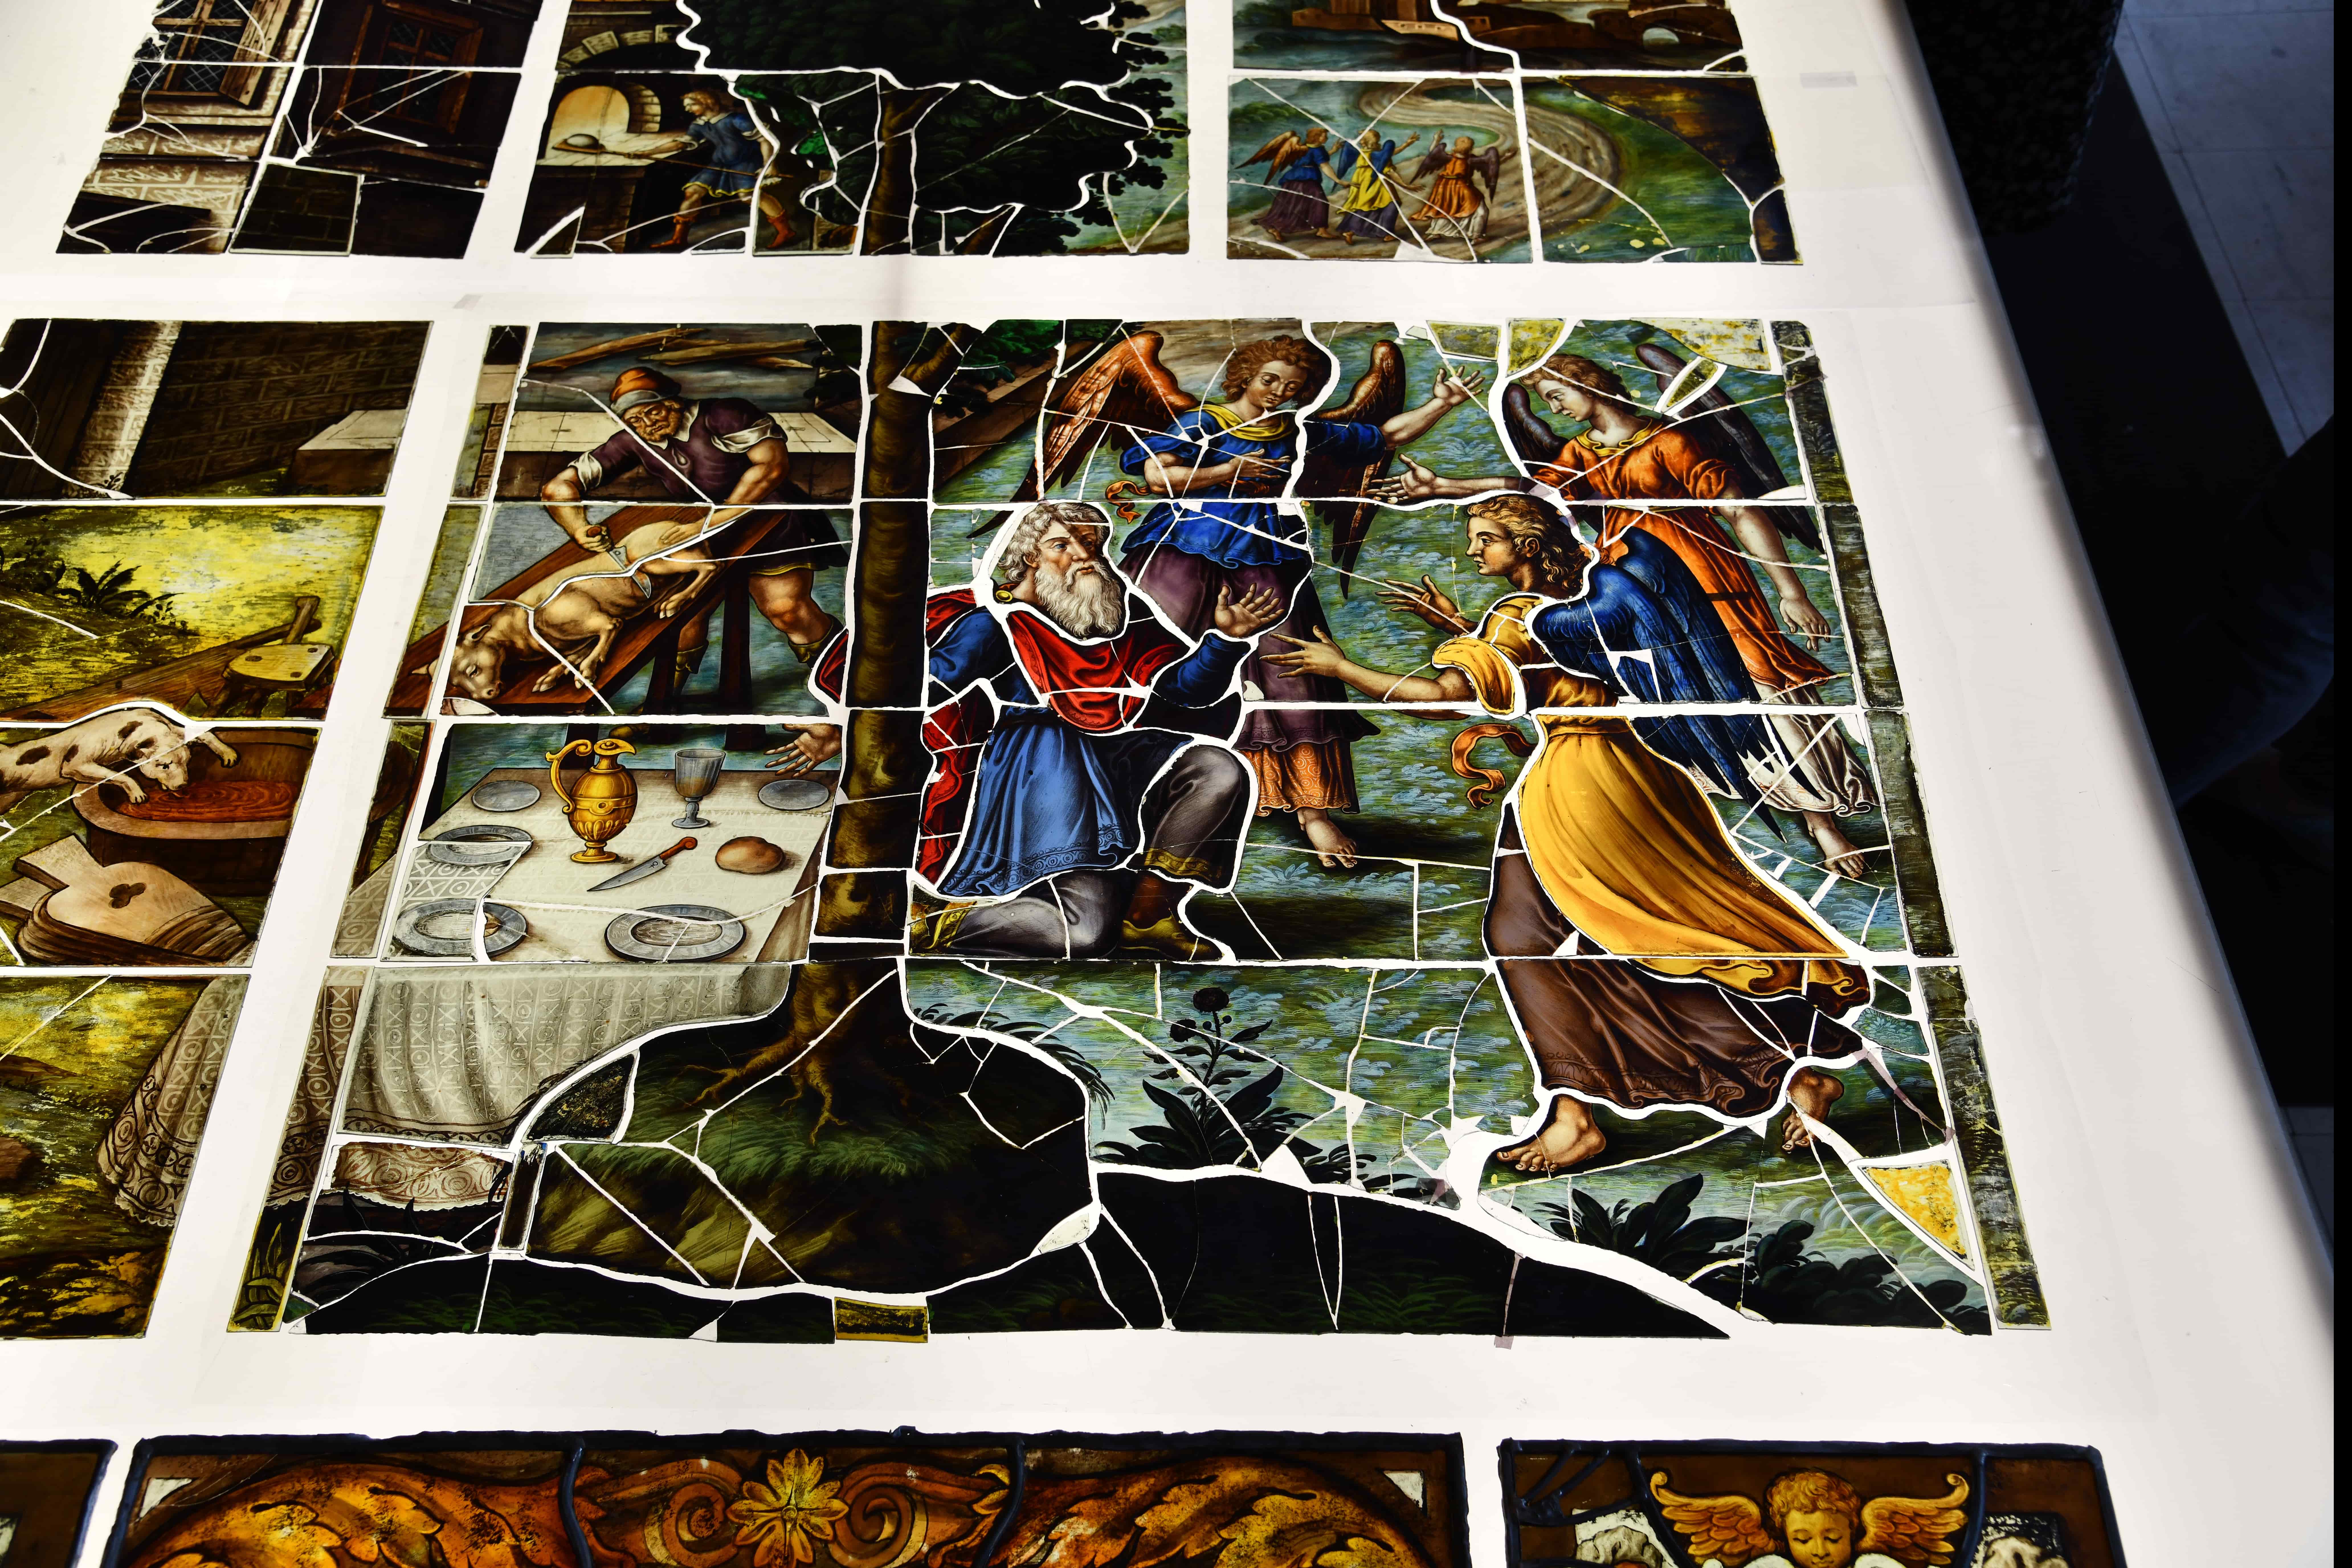 À Saint-Etienne-du-Mont, restauration de chefs-d’œuvre de l'art du vitrail au XVIIe siècle